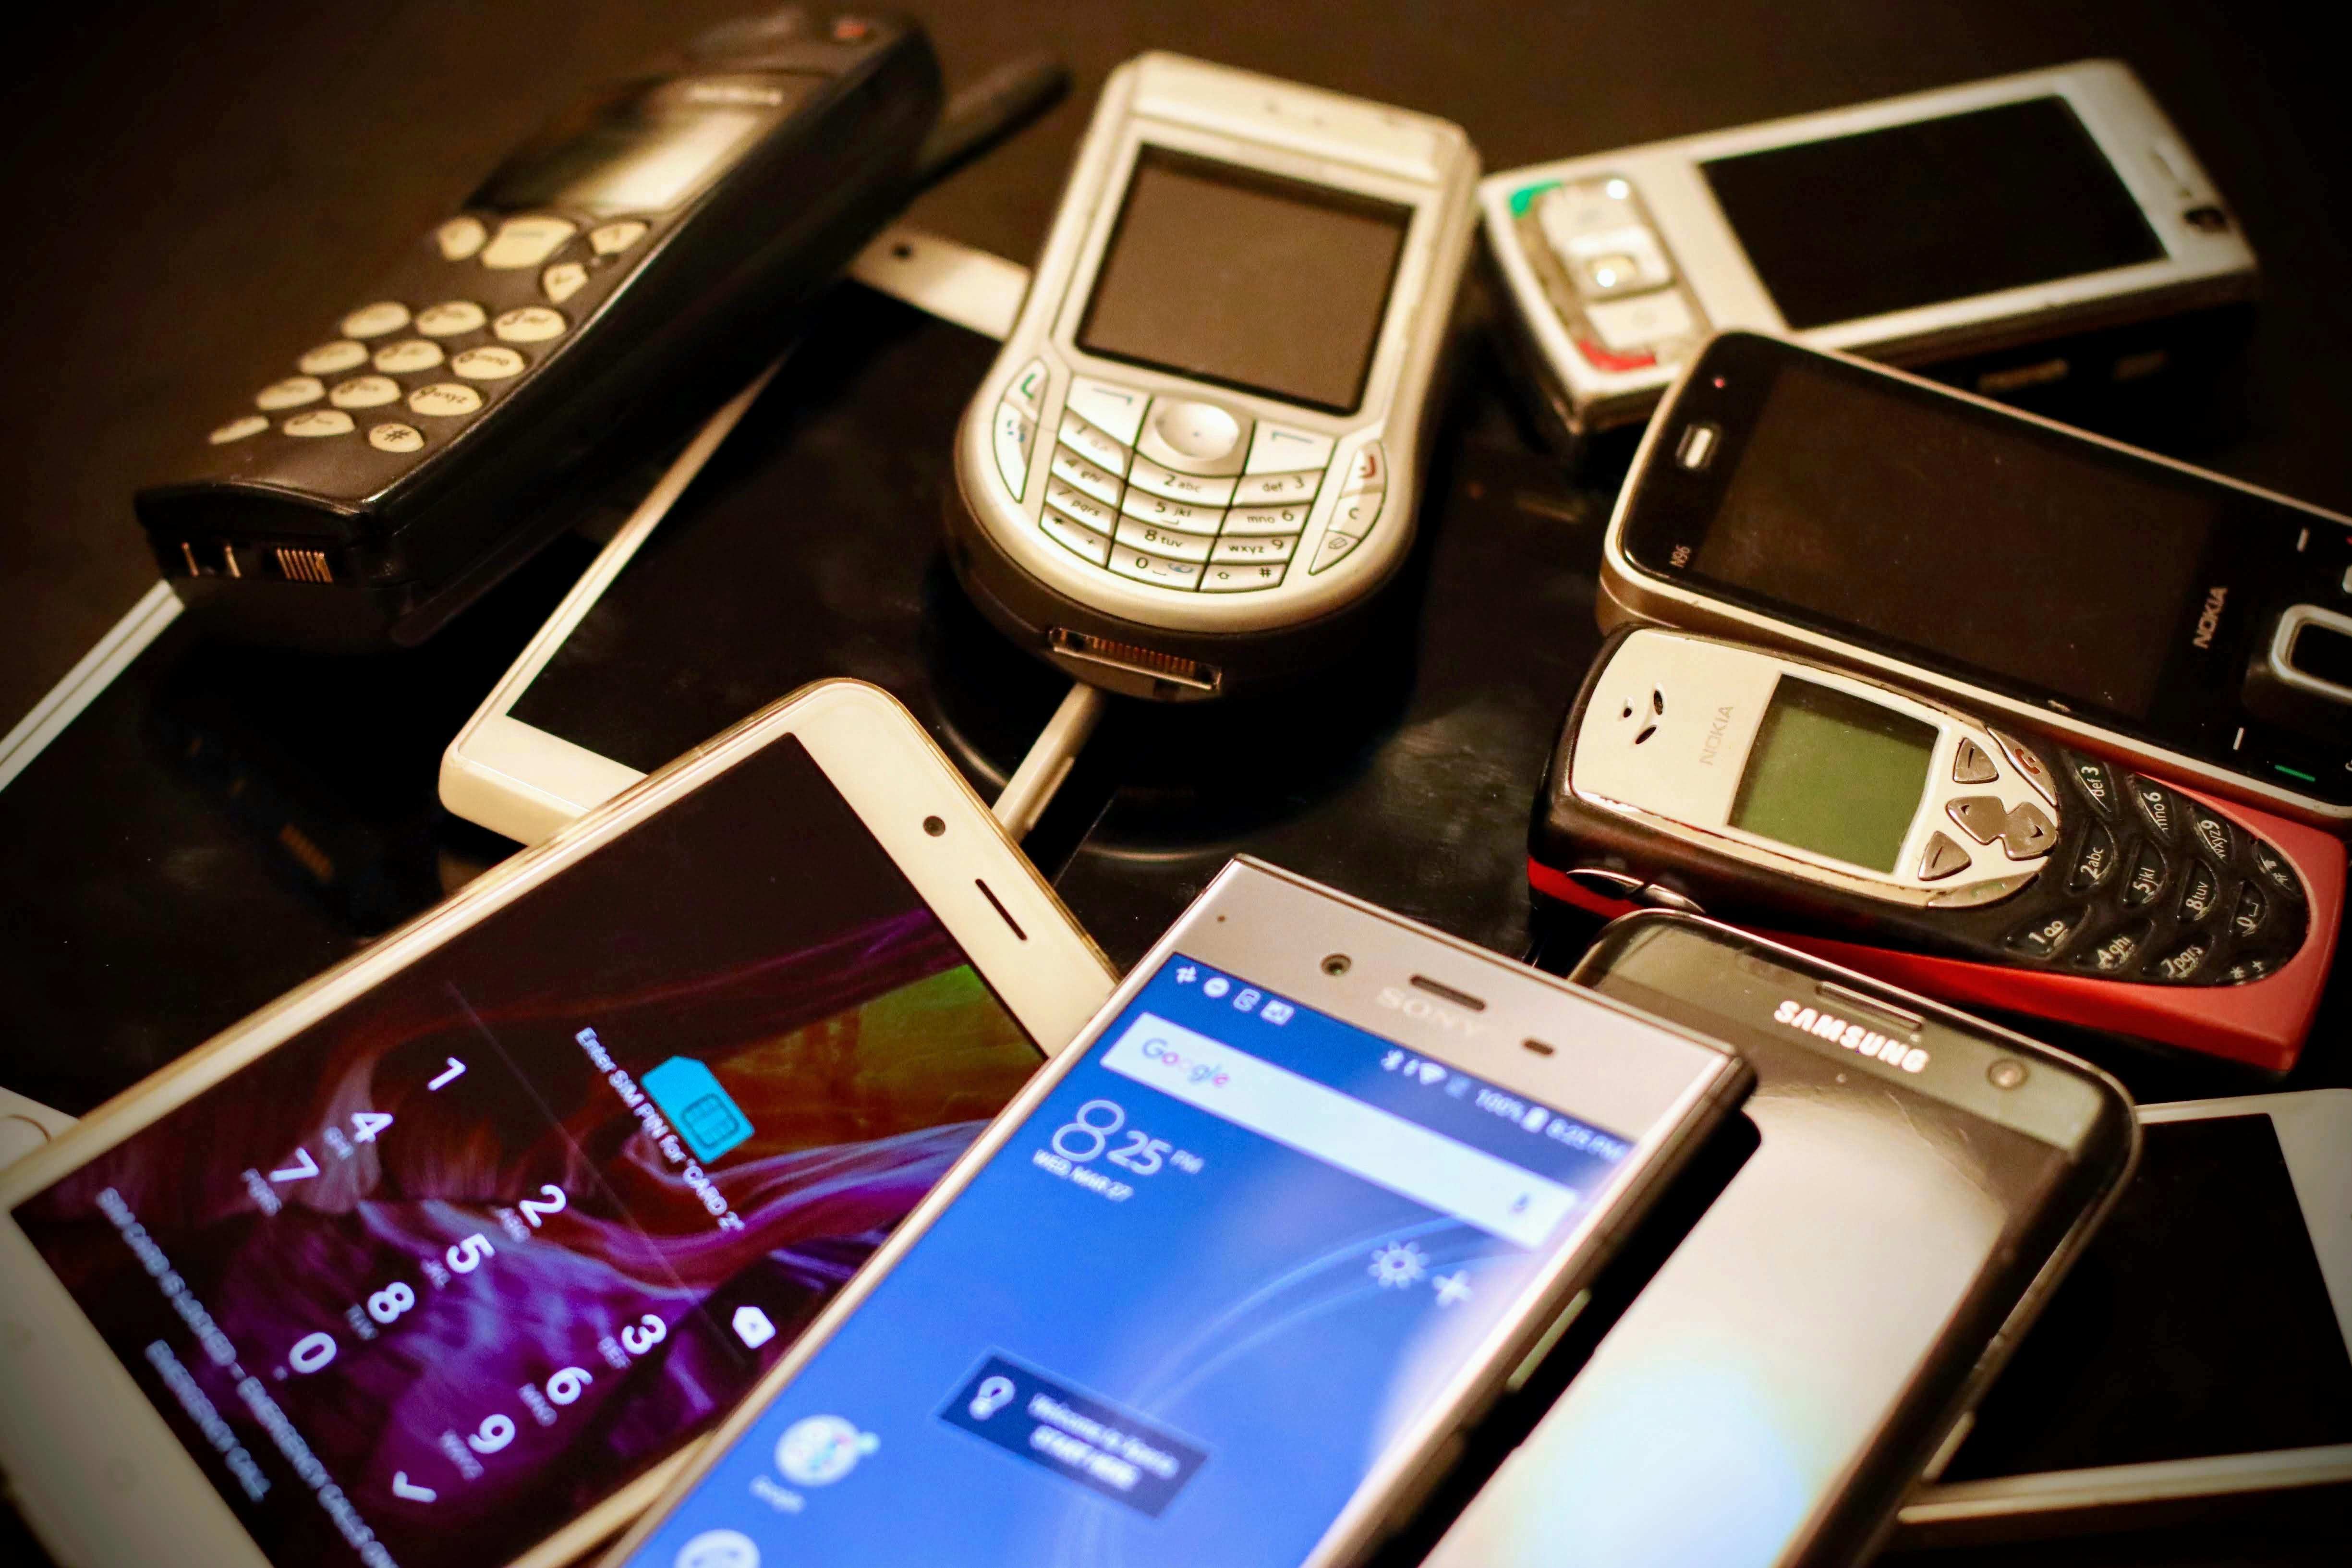 Rewolucja technologiczna nie narodziła się z iPhone'ami: 3 zapomniane telefony, które utorowały drogę? - obraz wiadomości na imei.info